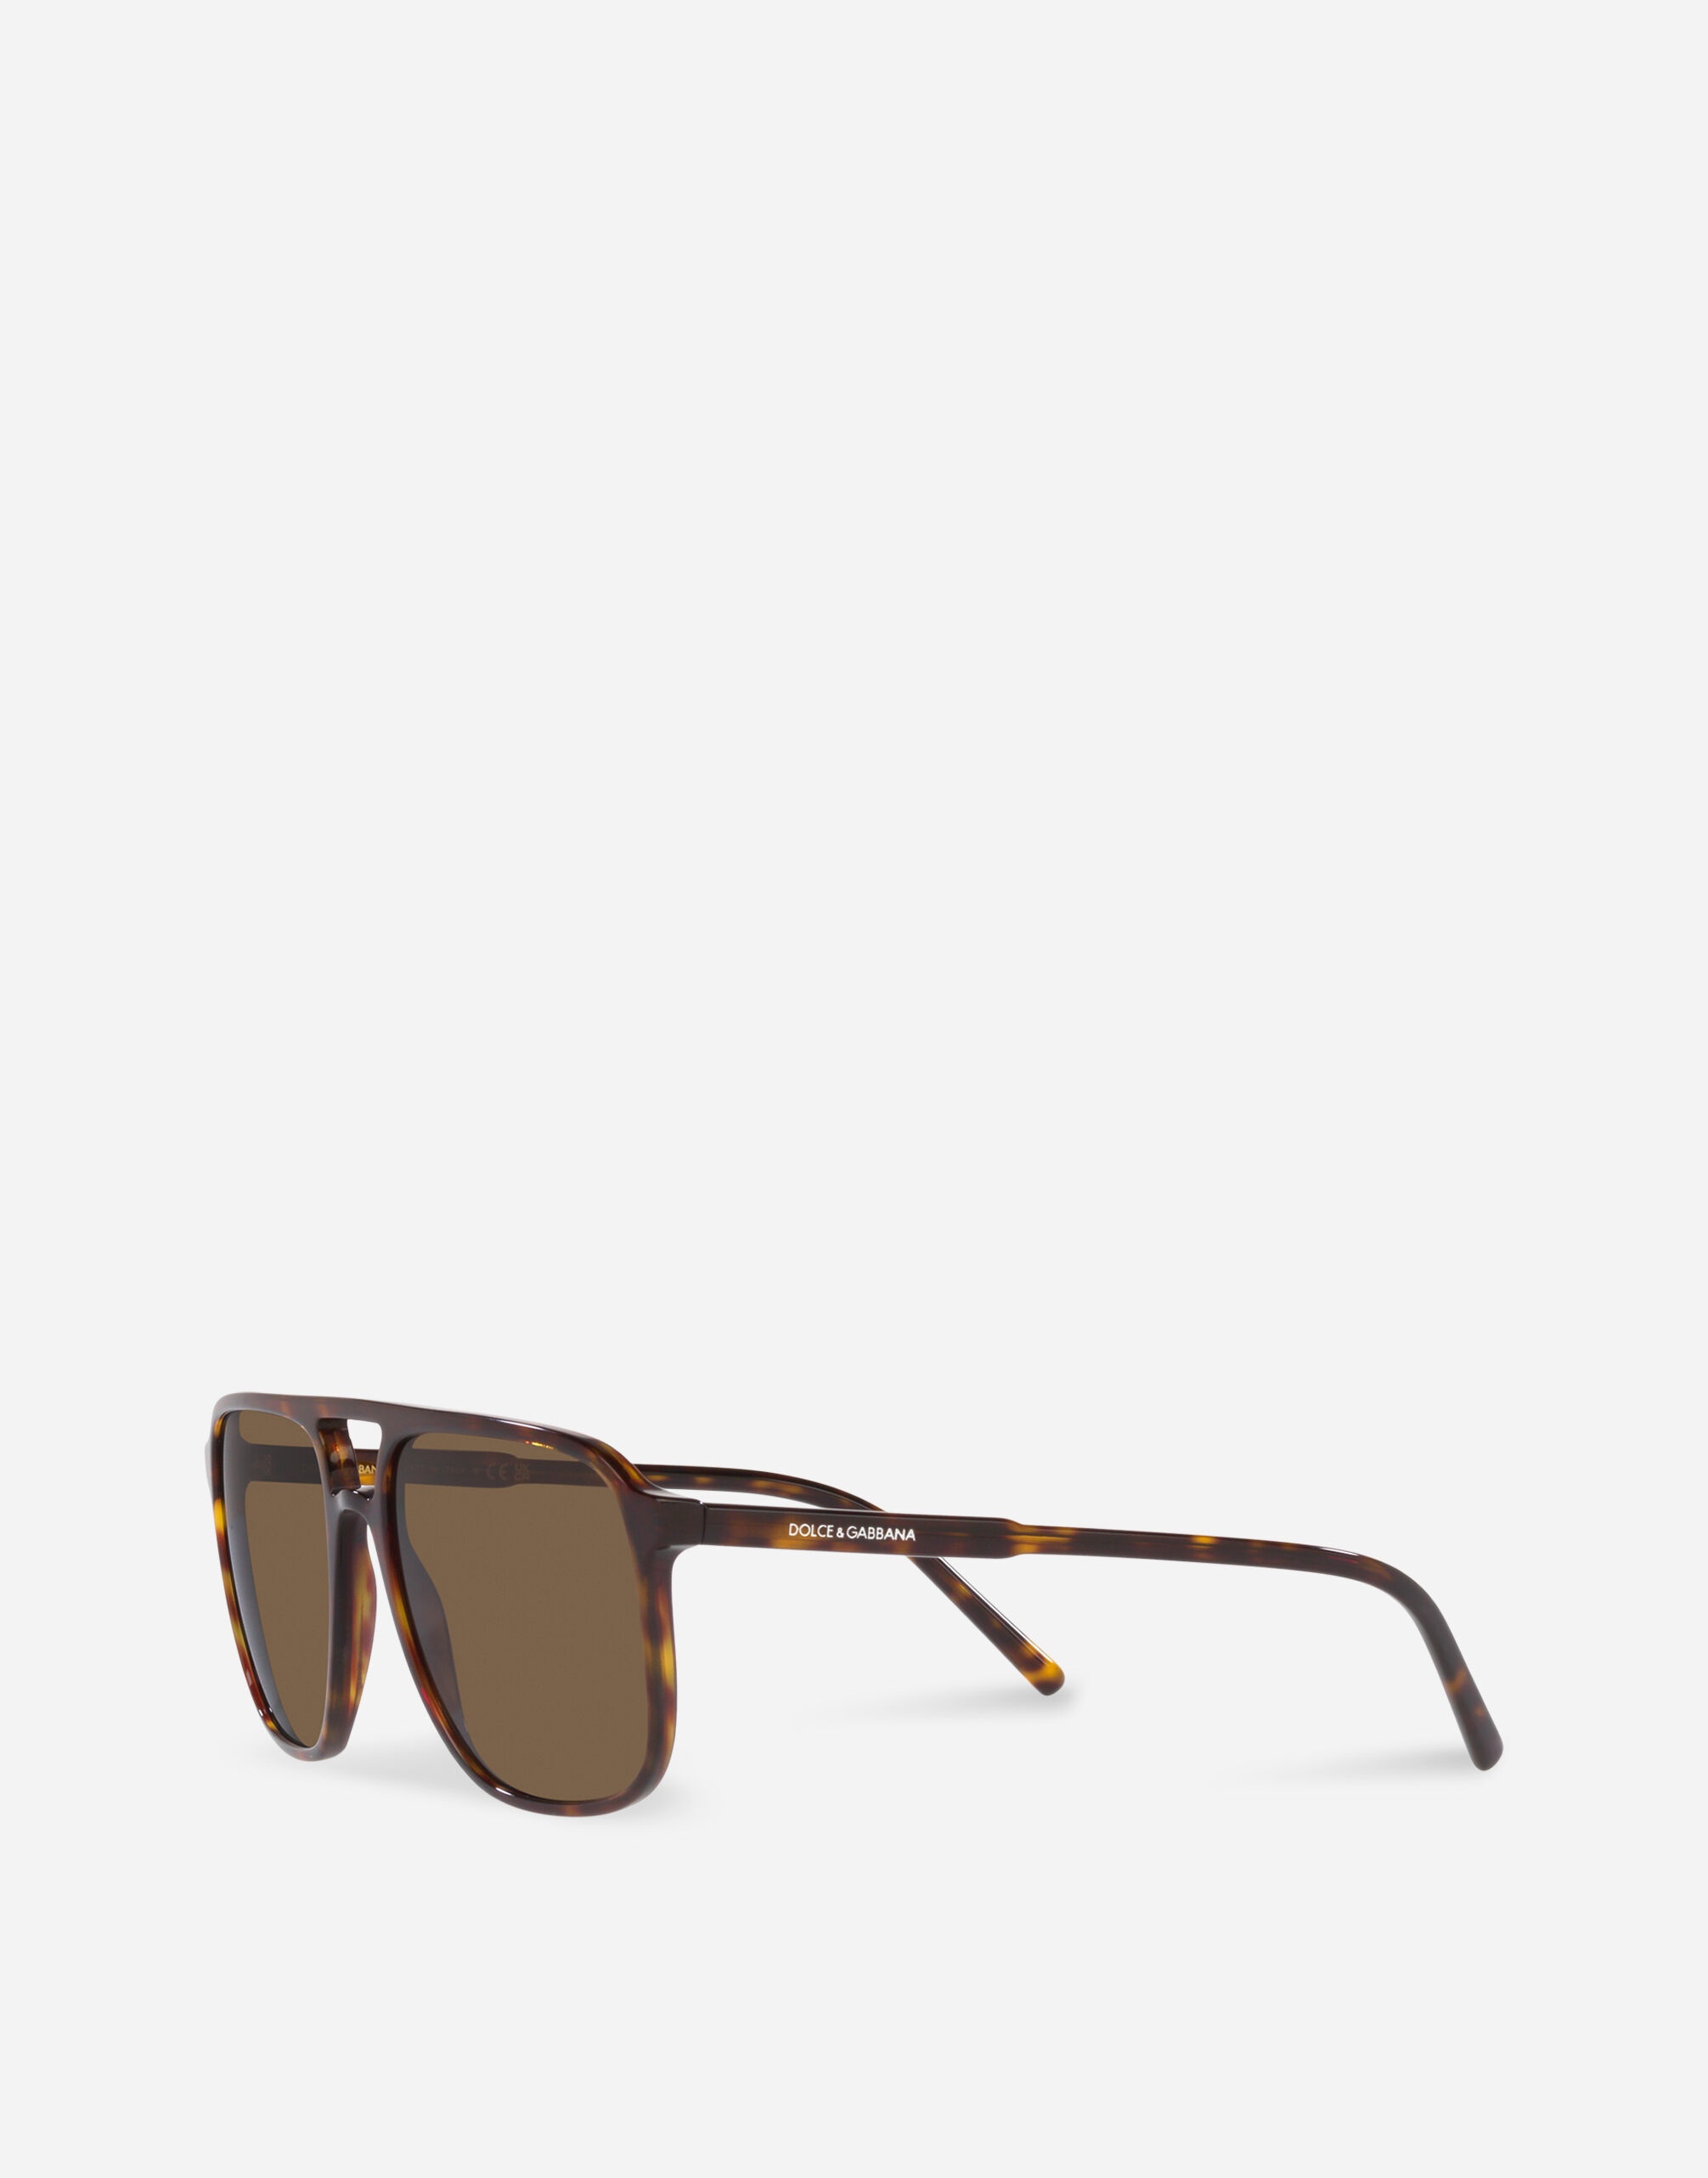 Thin profile sunglasses - 2